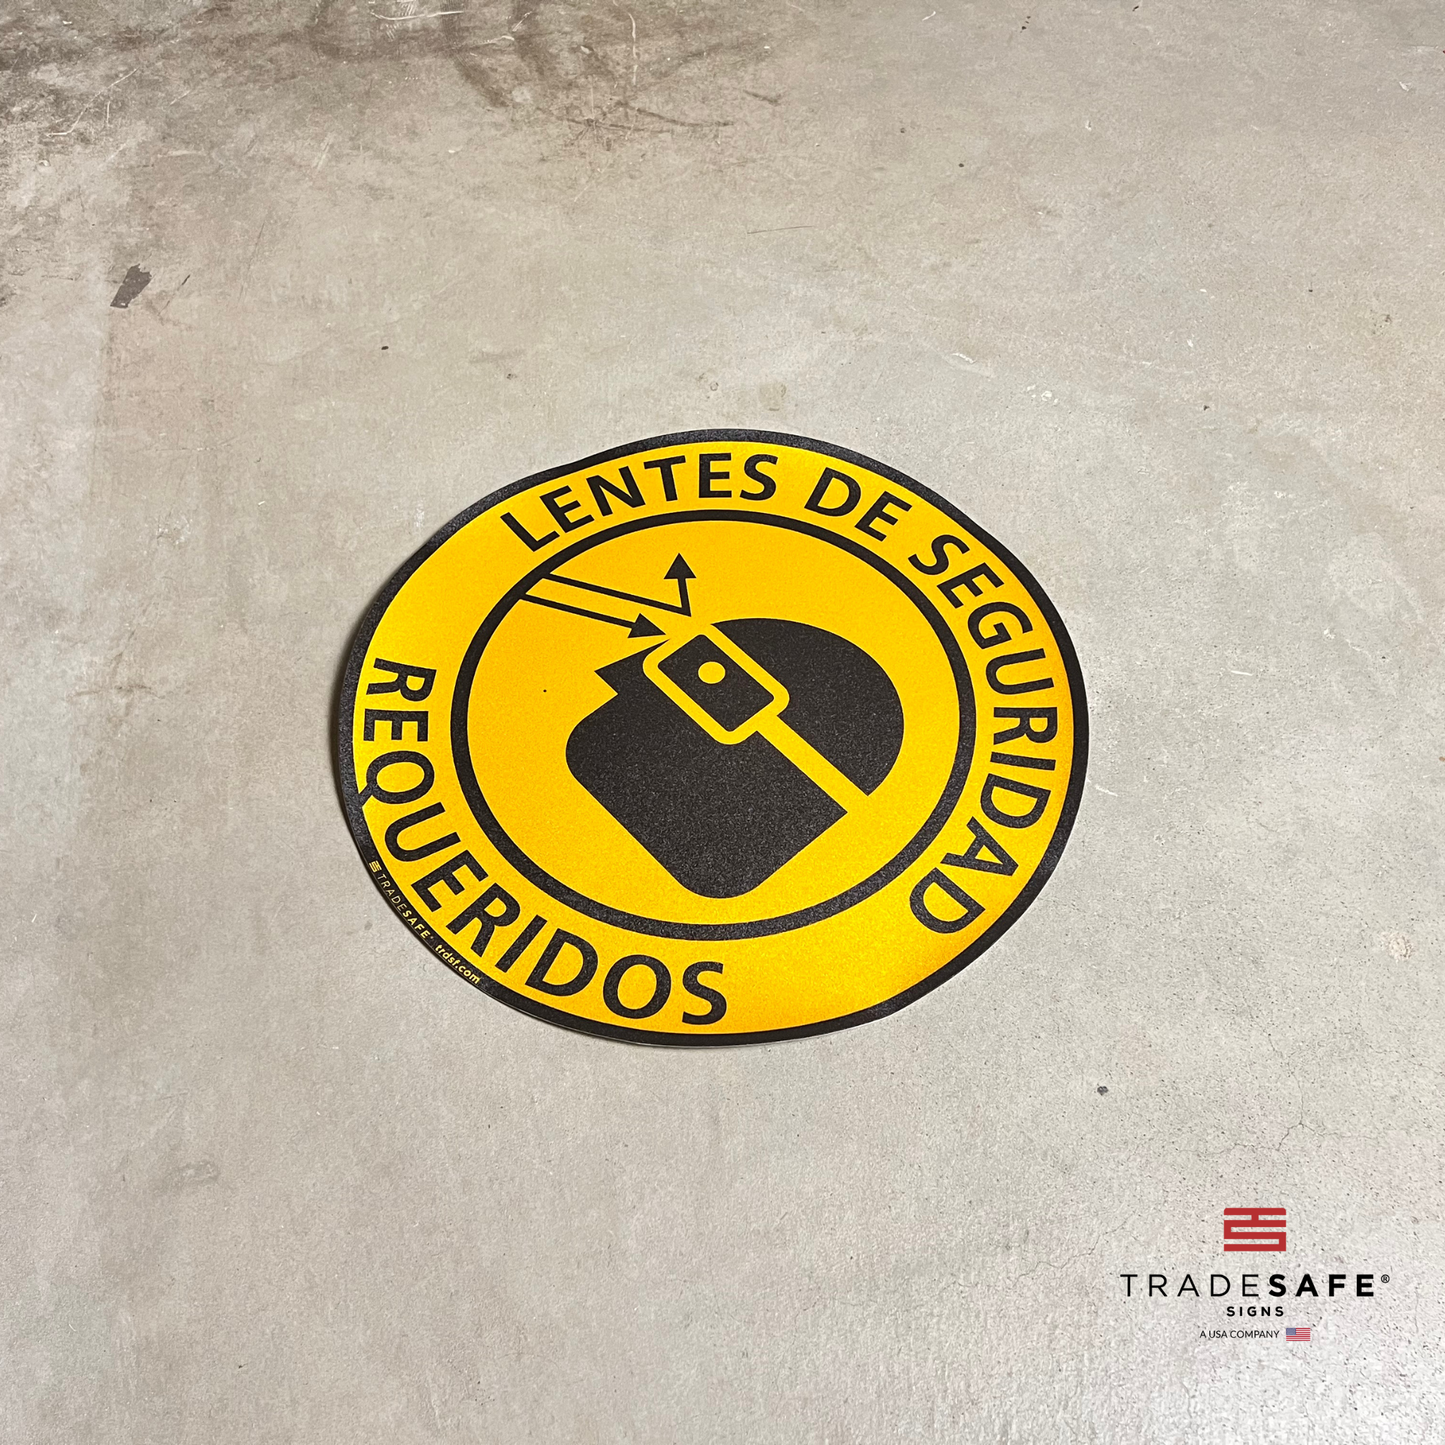 "lentes de seguridad requeridos" sign vinyl sticker on floor